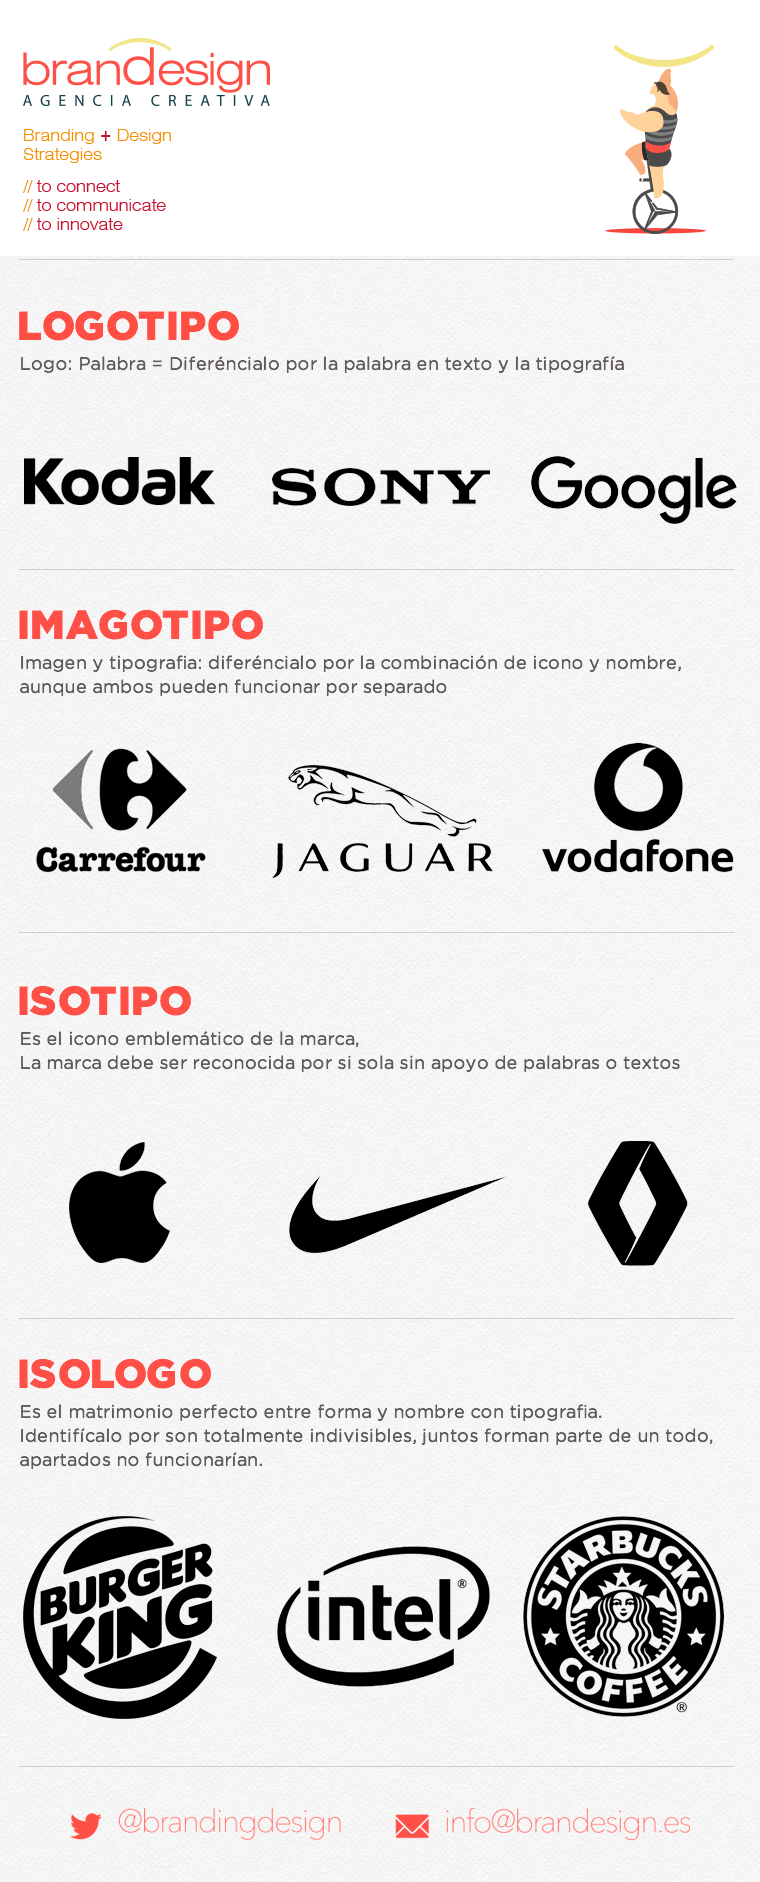 Entre Logo - Imagen corporativa: Logotipo, Logo, Imagopitpo, isologo, isótipo o ...